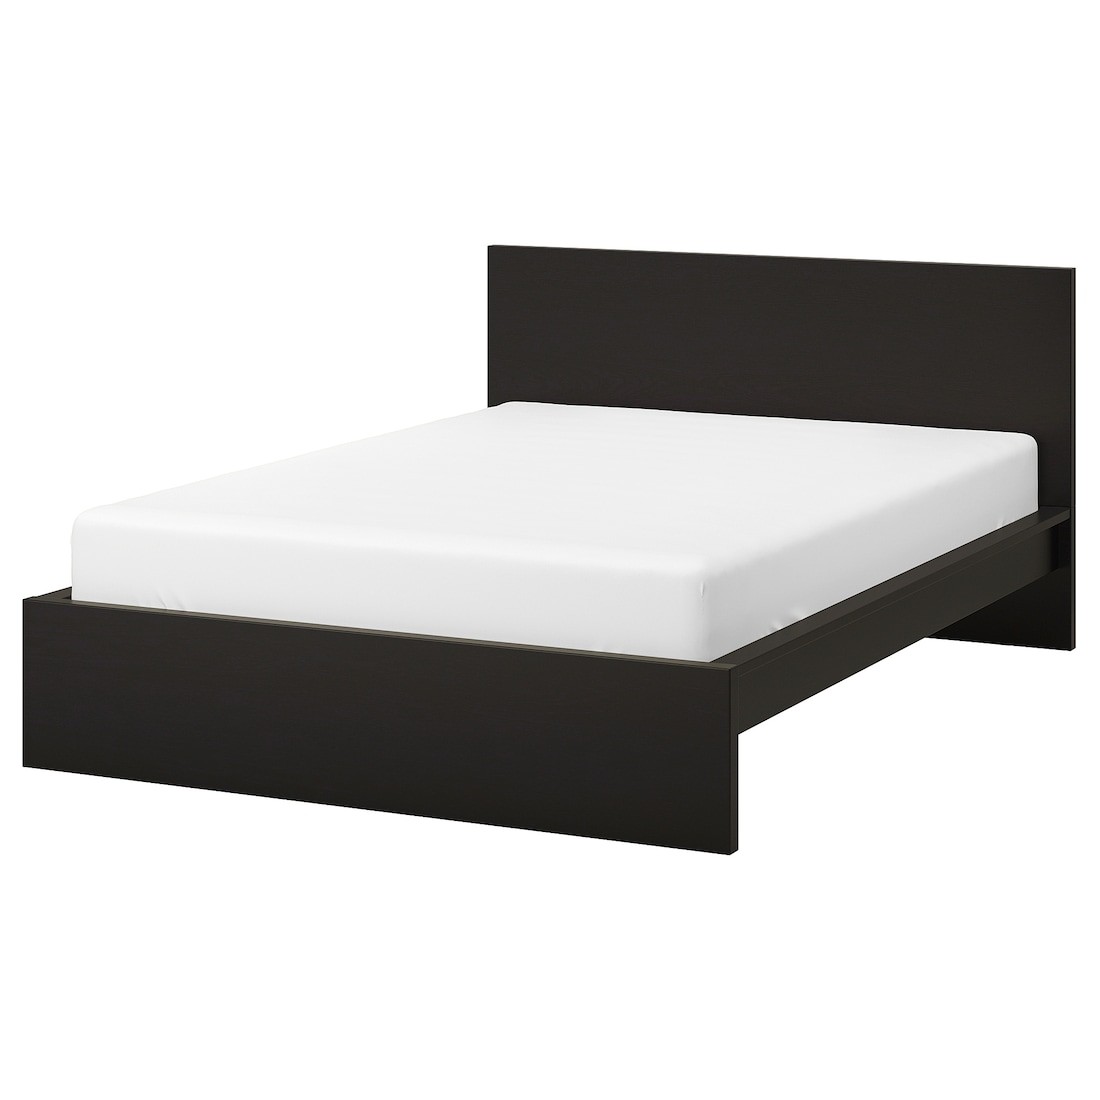 IKEA MALM МАЛЬМ Ліжко двоспальне, високе, чорно-коричневий / Lindbåden, 160x200 см 39494963 394.949.63